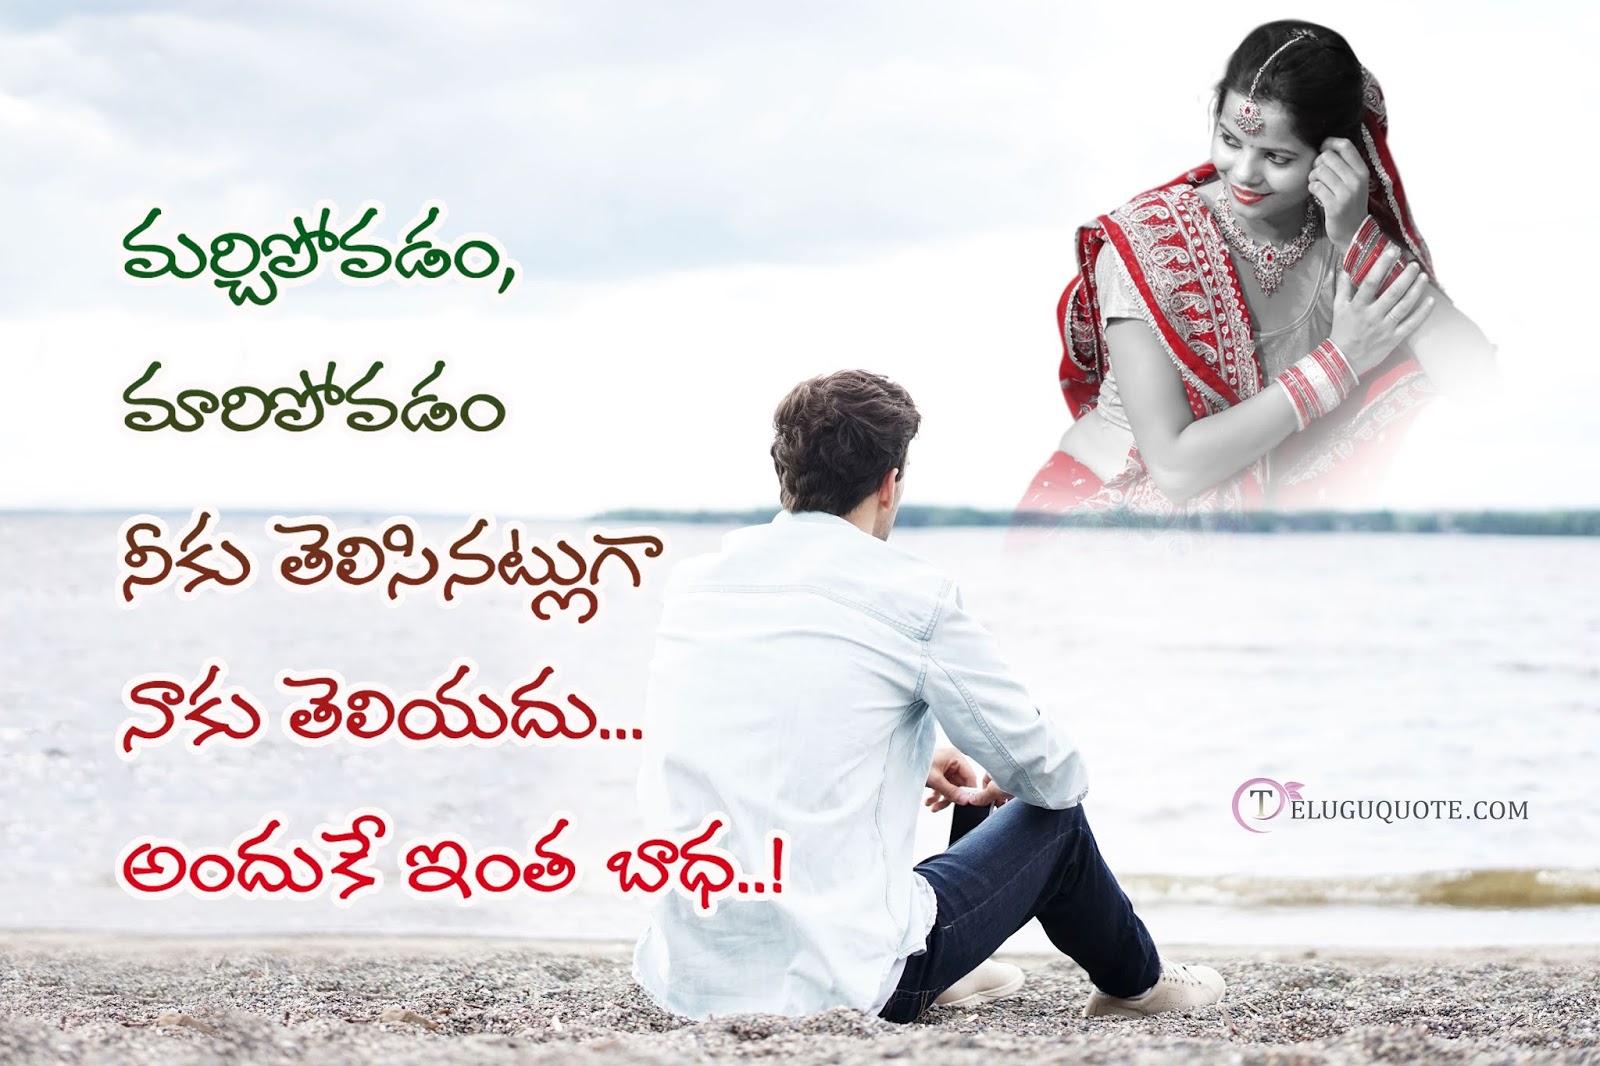 Telugu Quotes : Love Failure Quotes In Telugu For Facebook